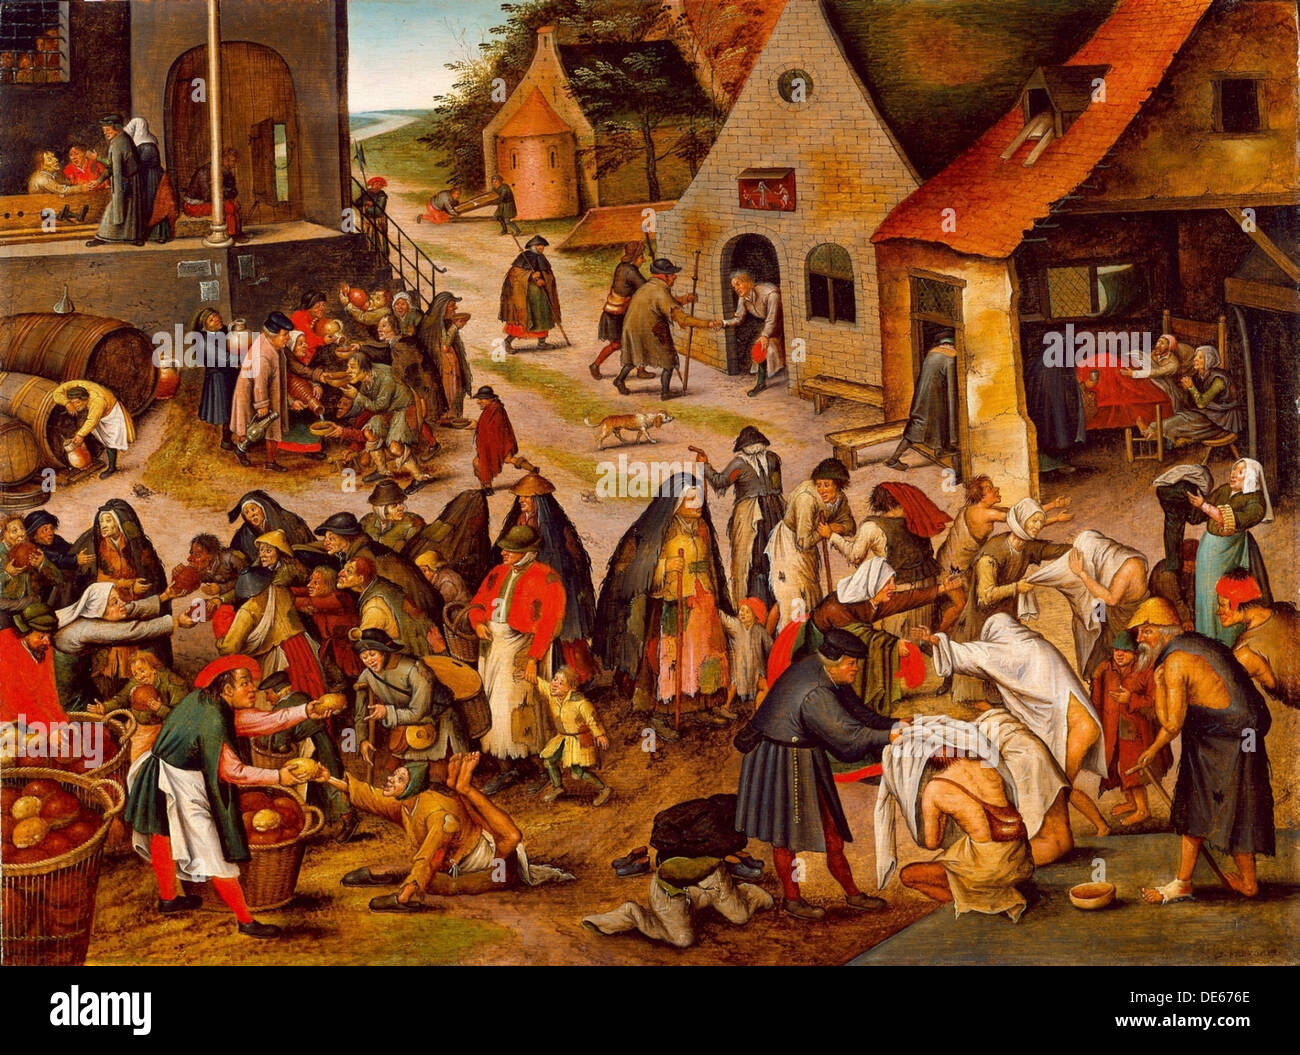 Die sieben Werke der Barmherzigkeit, zwischen 1616 und 1638. Künstler: Brueghel, Pieter, der jüngere (1564-1638) Stockfoto